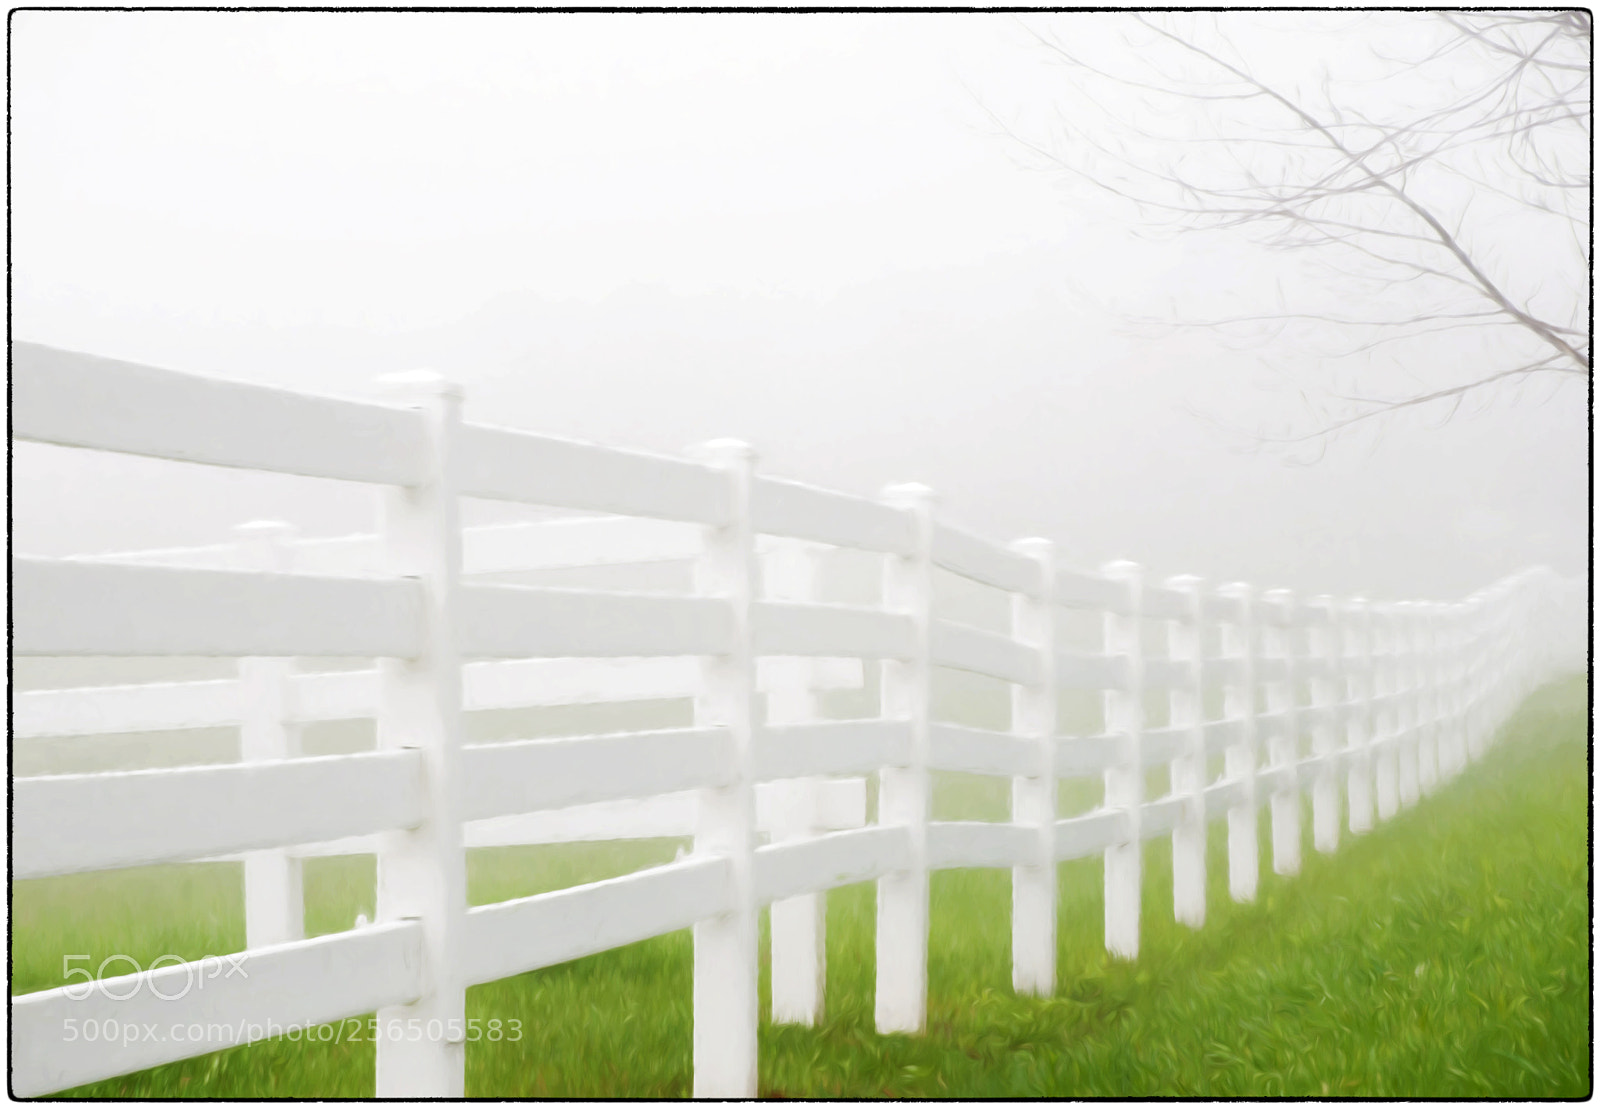 Nikon D300 sample photo. Foggy fence photography